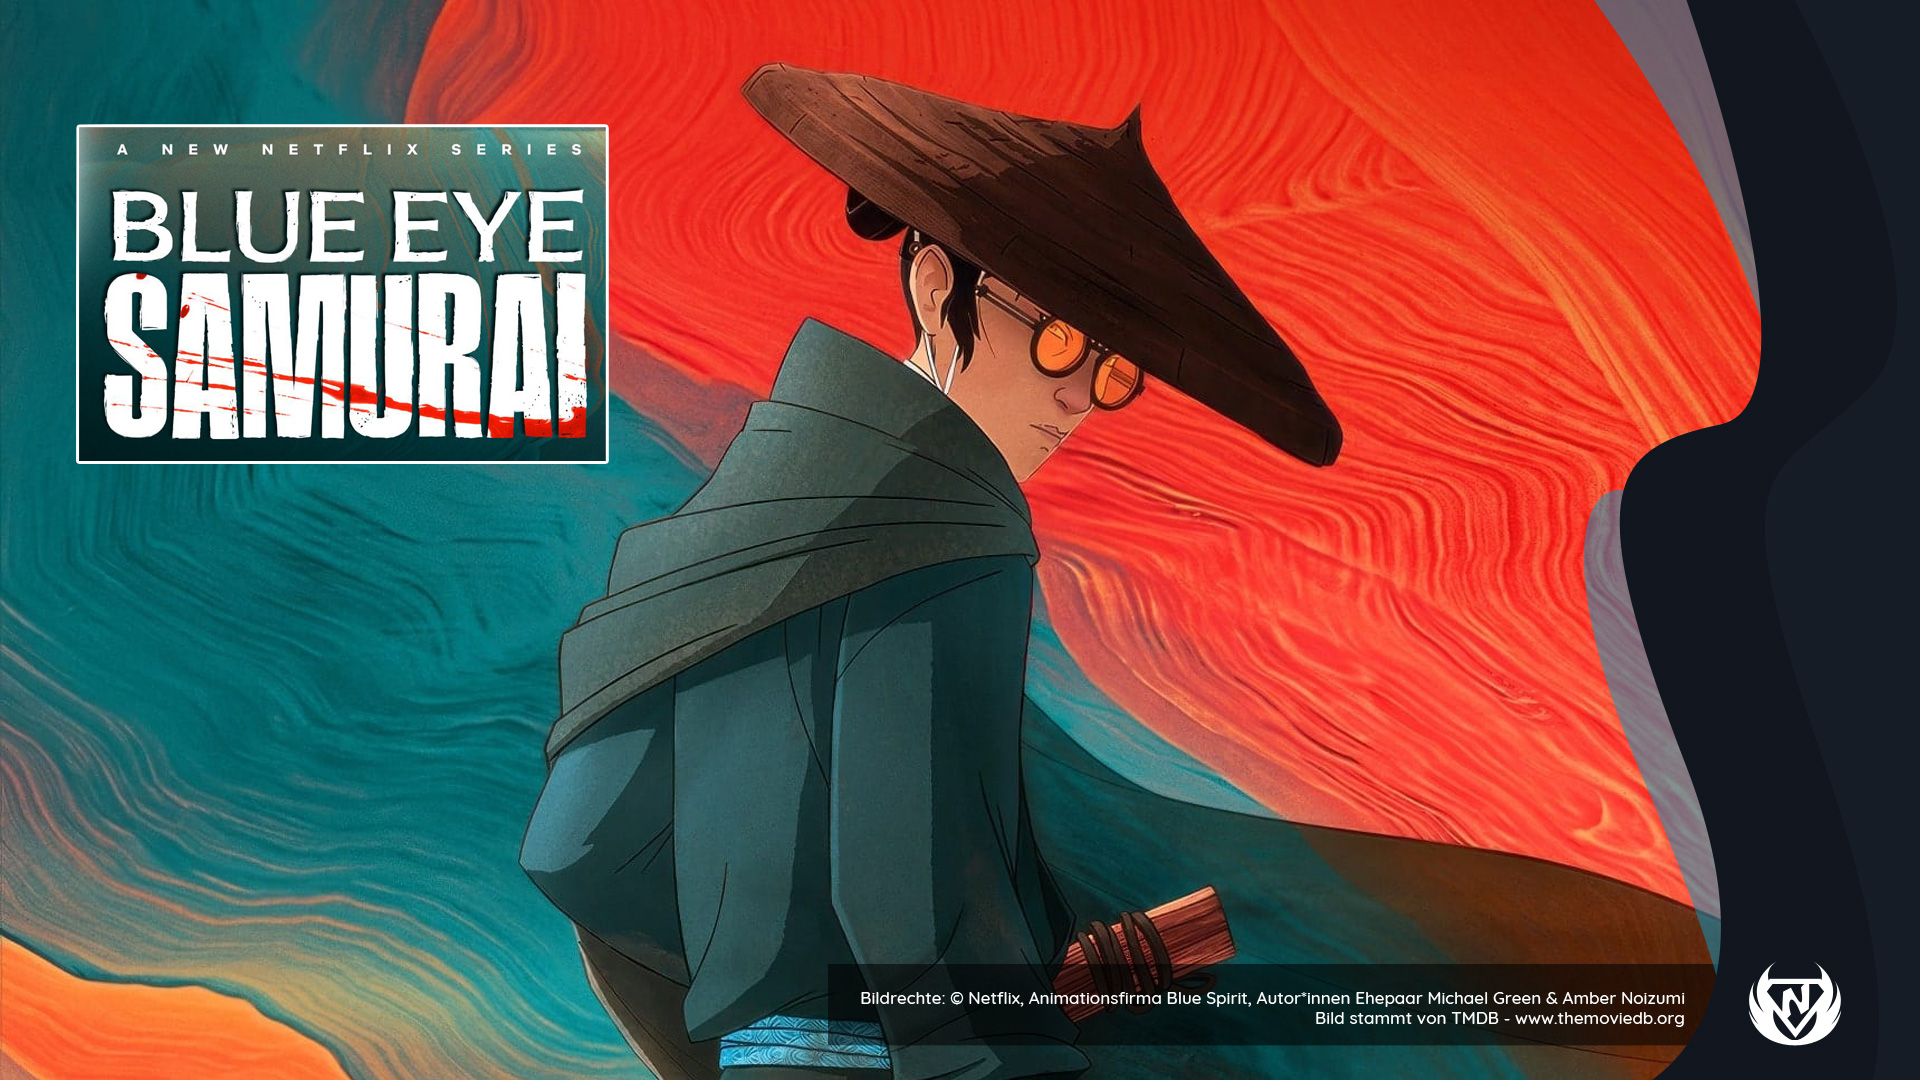 Neue Animationsserie “Blue Eye Samurai” auf Netflix - taugt die was?